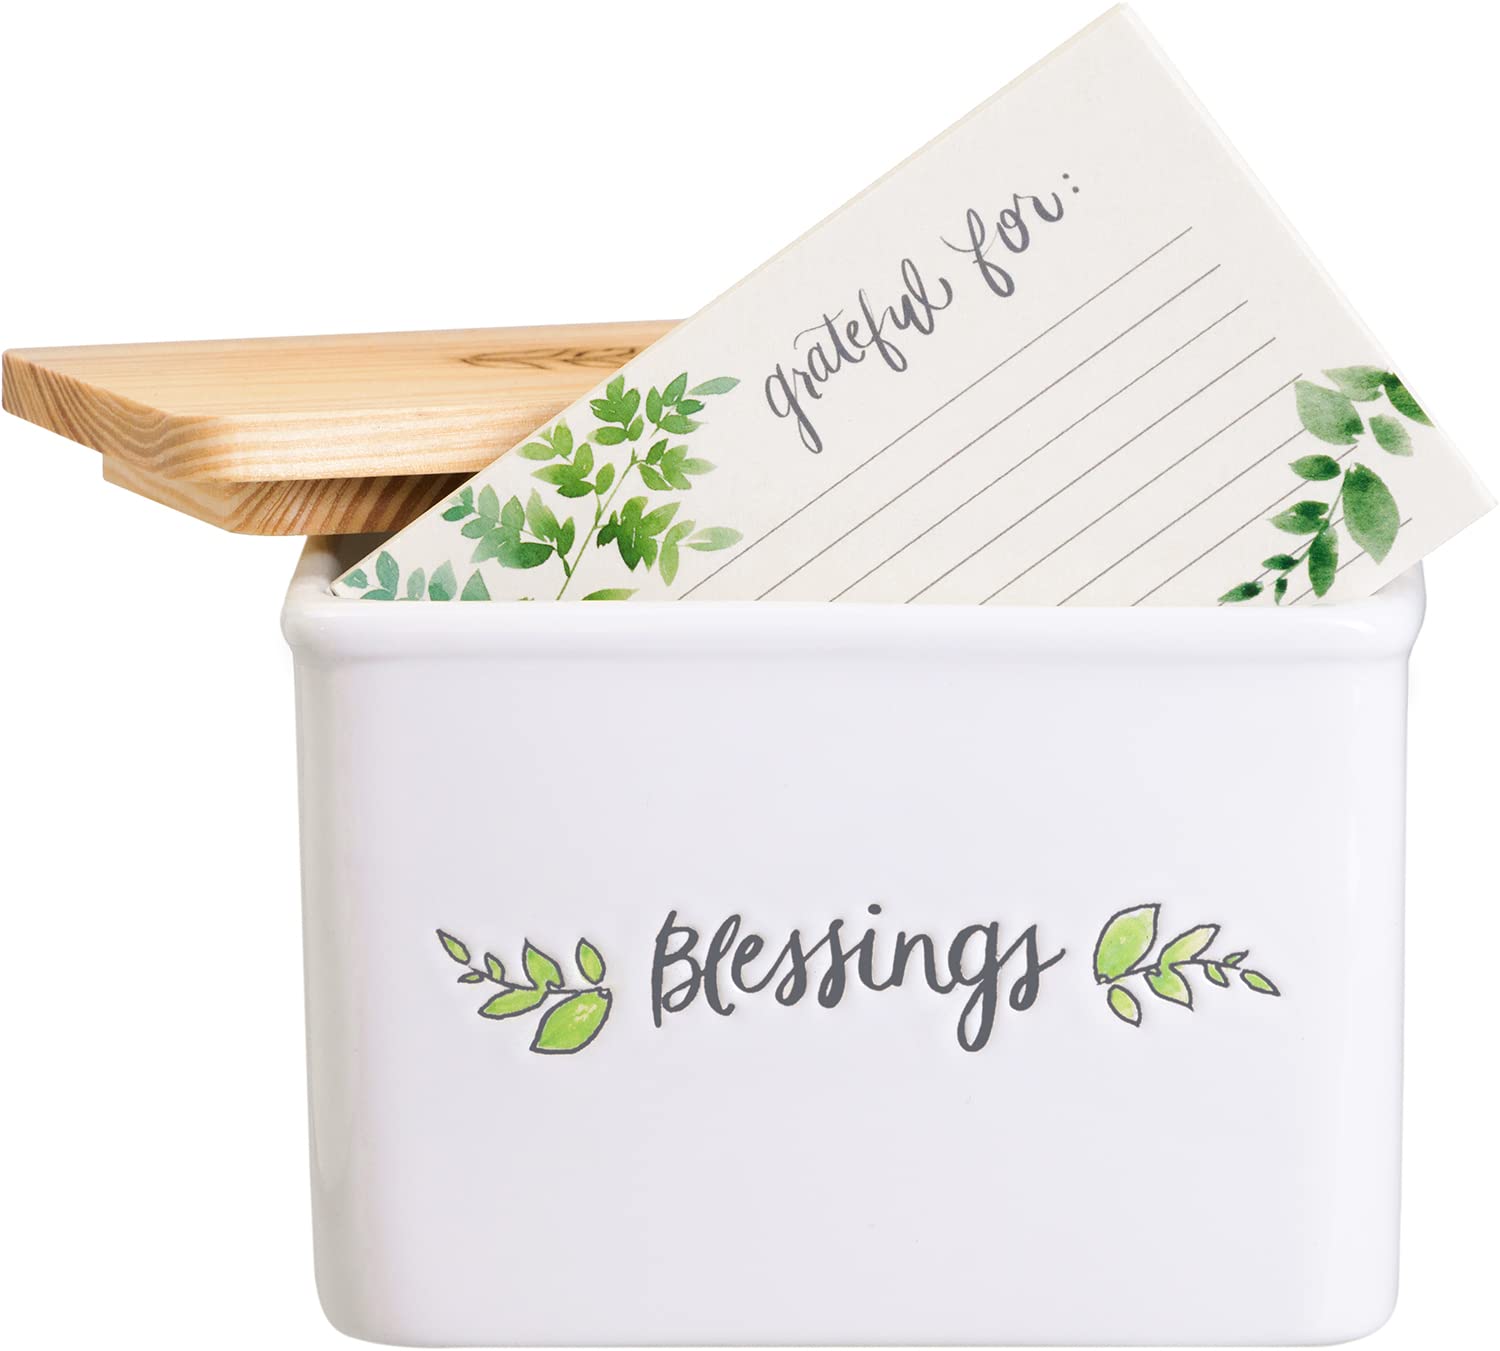 Eccolo Blessings Ceramic Gratitude Box